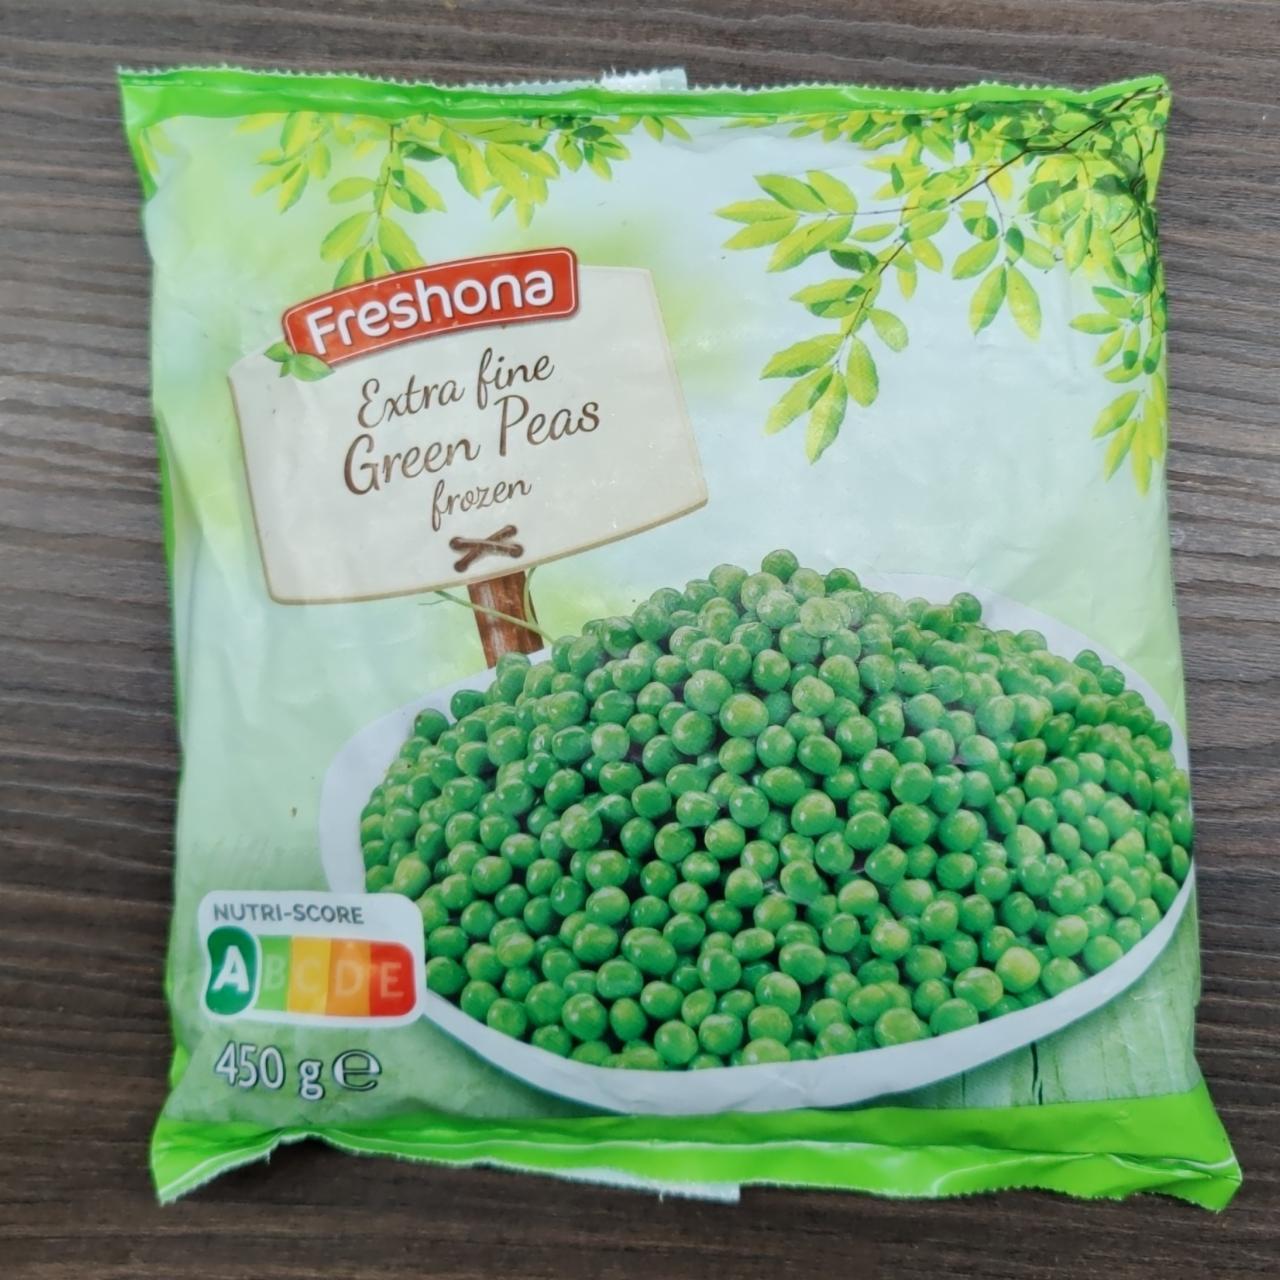 Fotografie - Extra fine Green Peas frozen Freshona